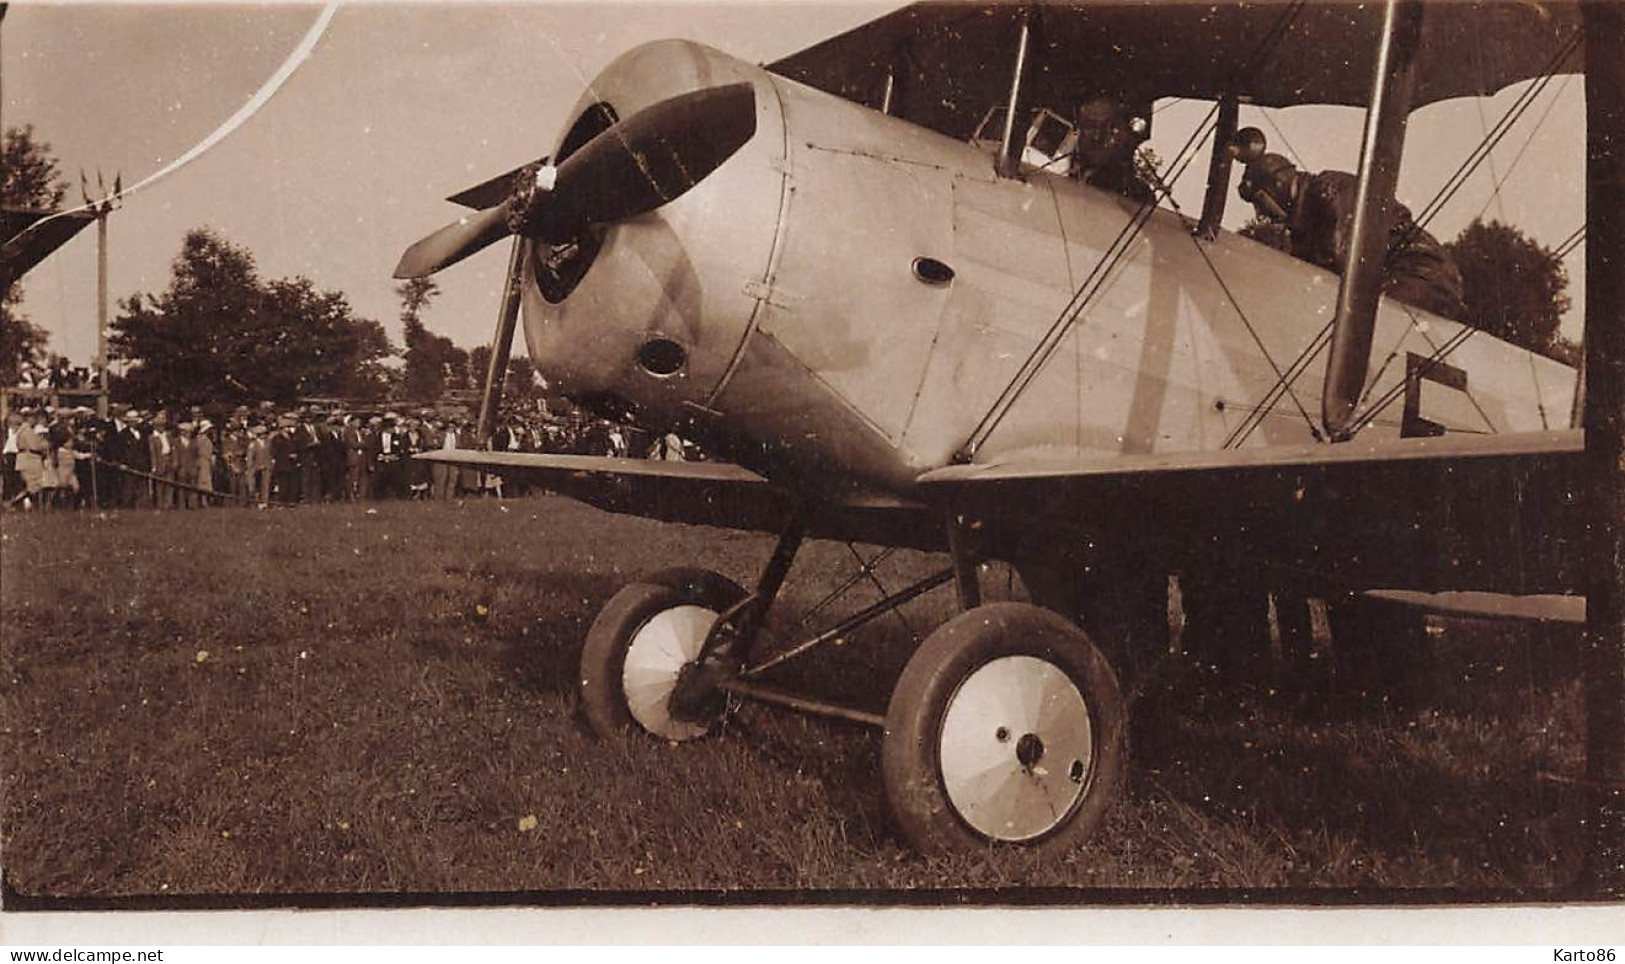 Aviation * Avion Marque Type Modèle ? & Aviateur * Aérodrome Meeting Course * Photo Ancienne Format 11.2x6.8cm - ....-1914: Précurseurs